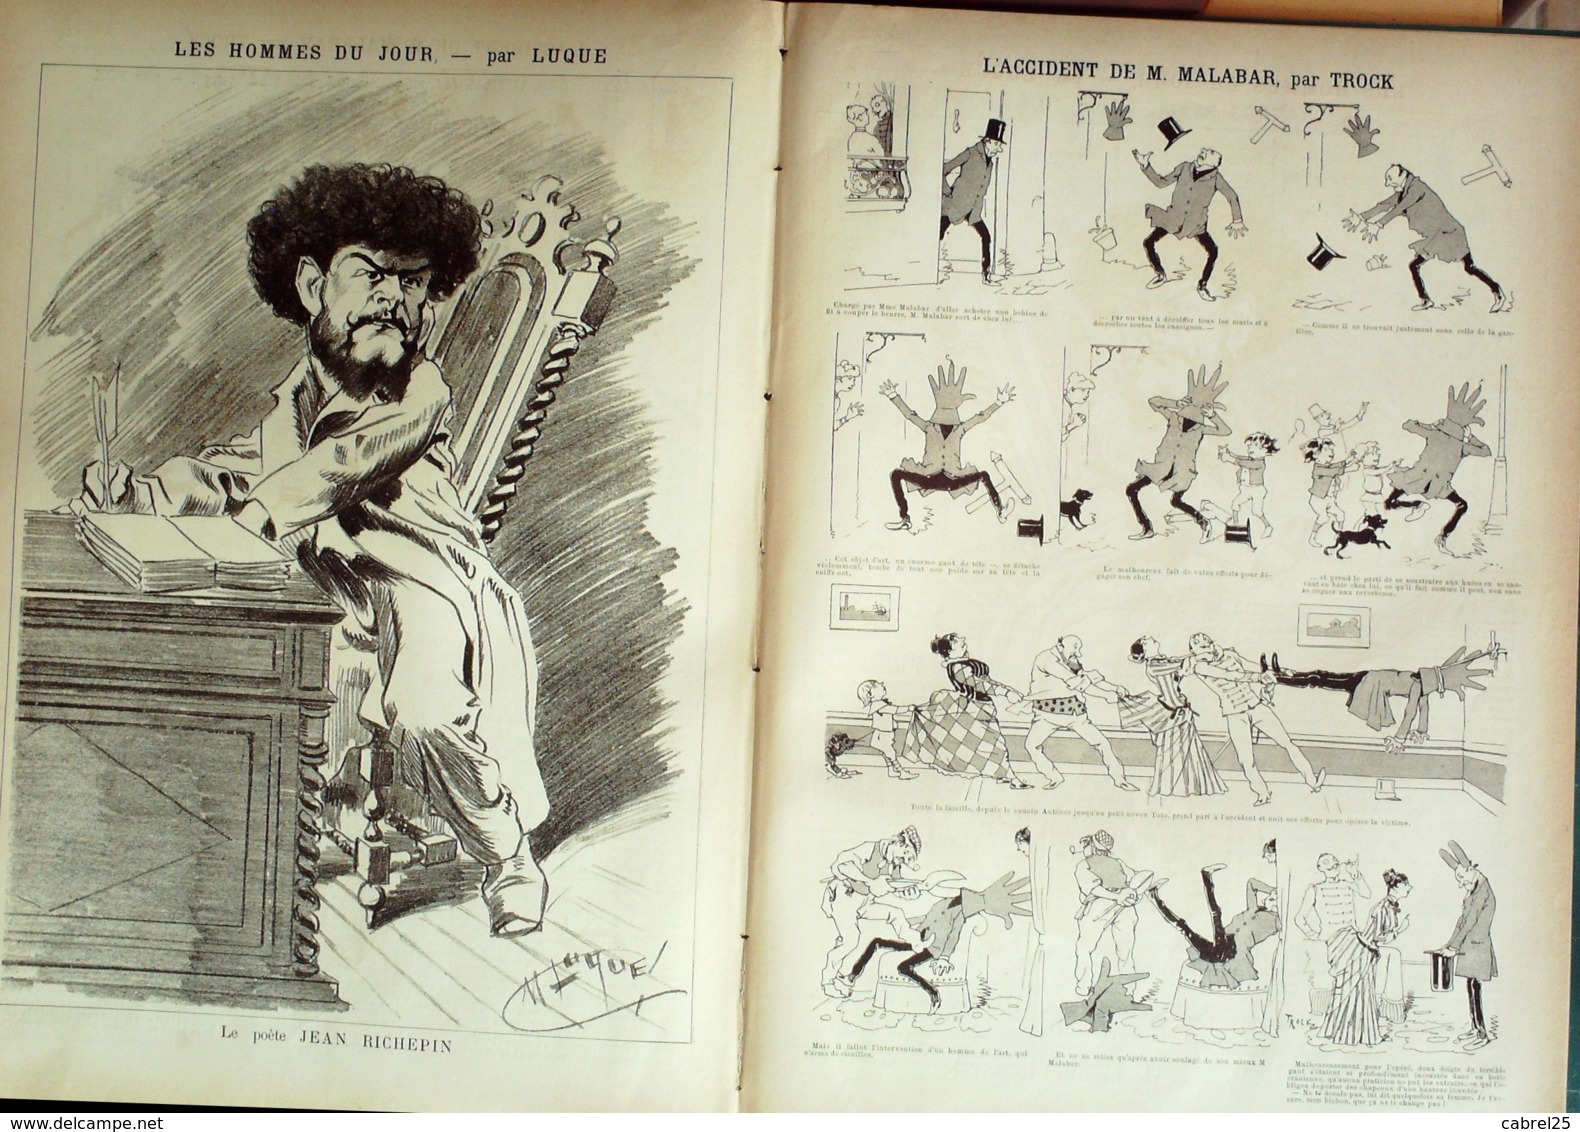 LA CARICATURE-1886-359-ACTUALITES PARISIENNES-DRANER-POETE JEAN RICHEPIN/LUQUE TROCK FOX JOB - Revues Anciennes - Avant 1900